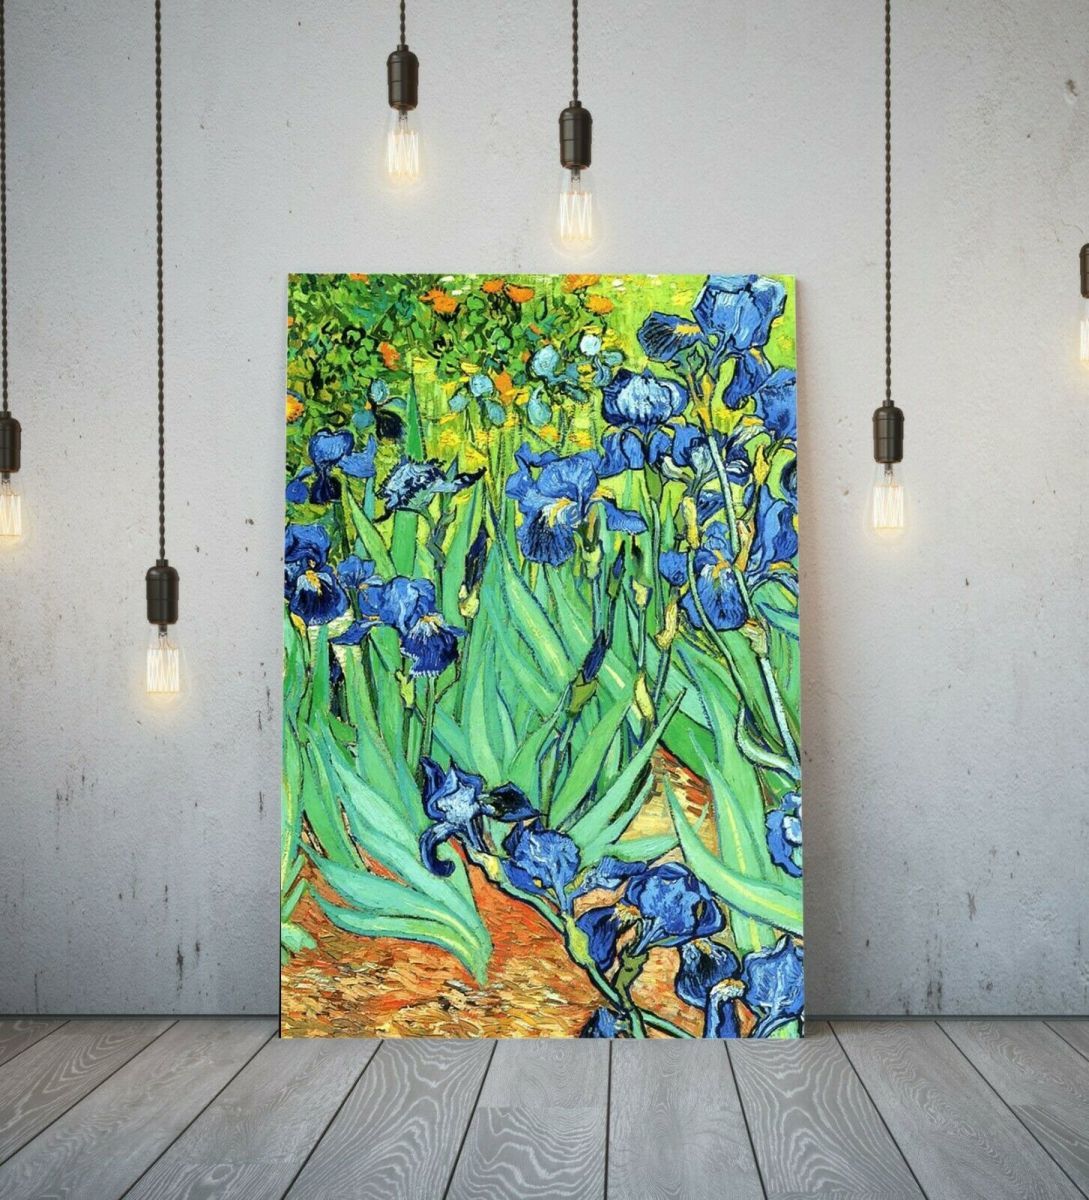 Van Gogh Iris Poster, hochwertiges gerahmtes Leinwandbild, A1, Kunsttafel, nordische ausländische Malerei, Waren, Interieur 1, Gedruckte Materialien, Poster, Andere